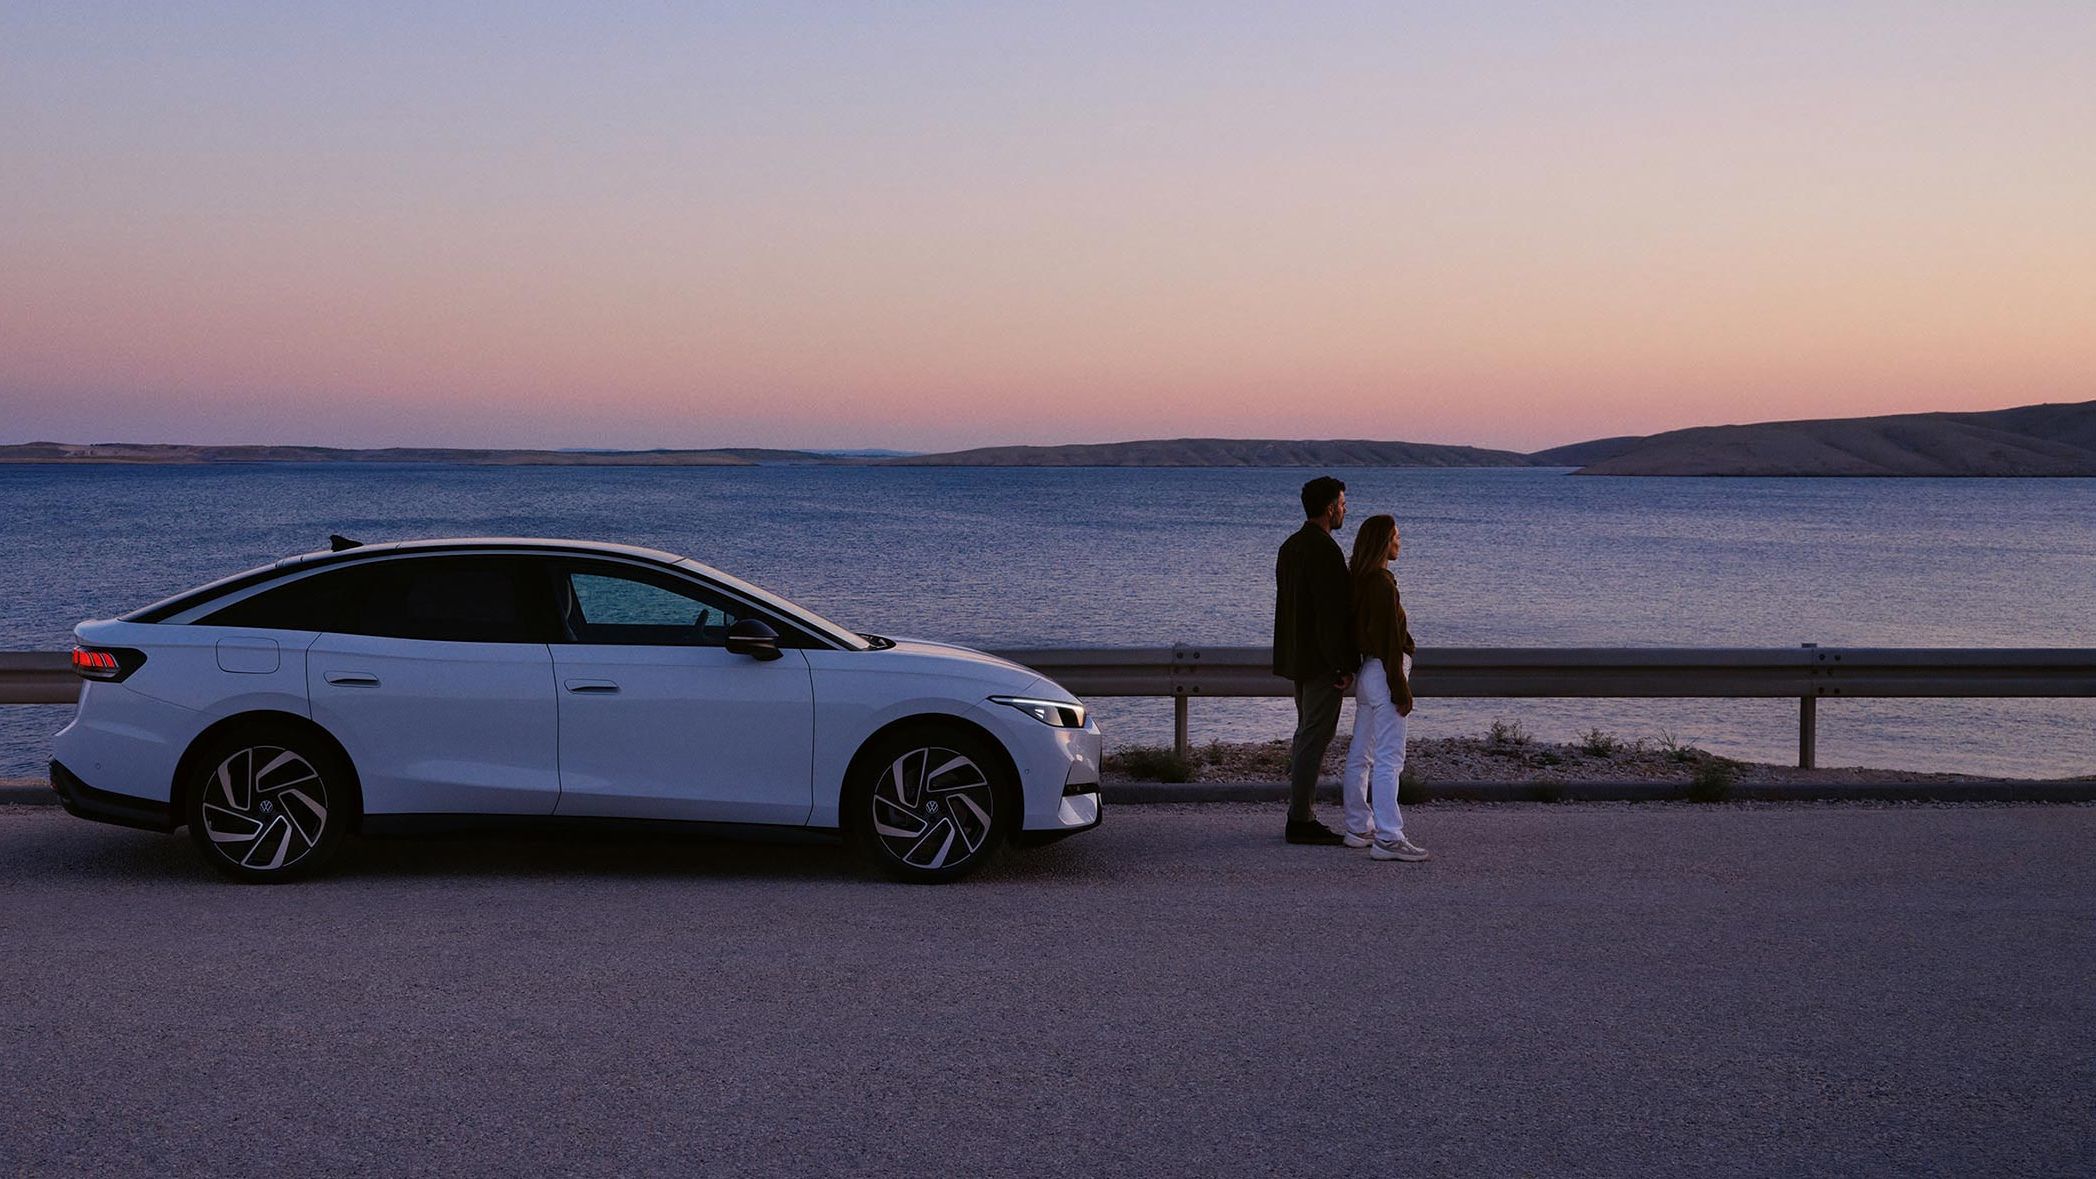 Ein VW ID.7 steht geparkt am Meer. Vor dem Auto steht ein Pärchen, das in den Sonnenuntergang blickt.